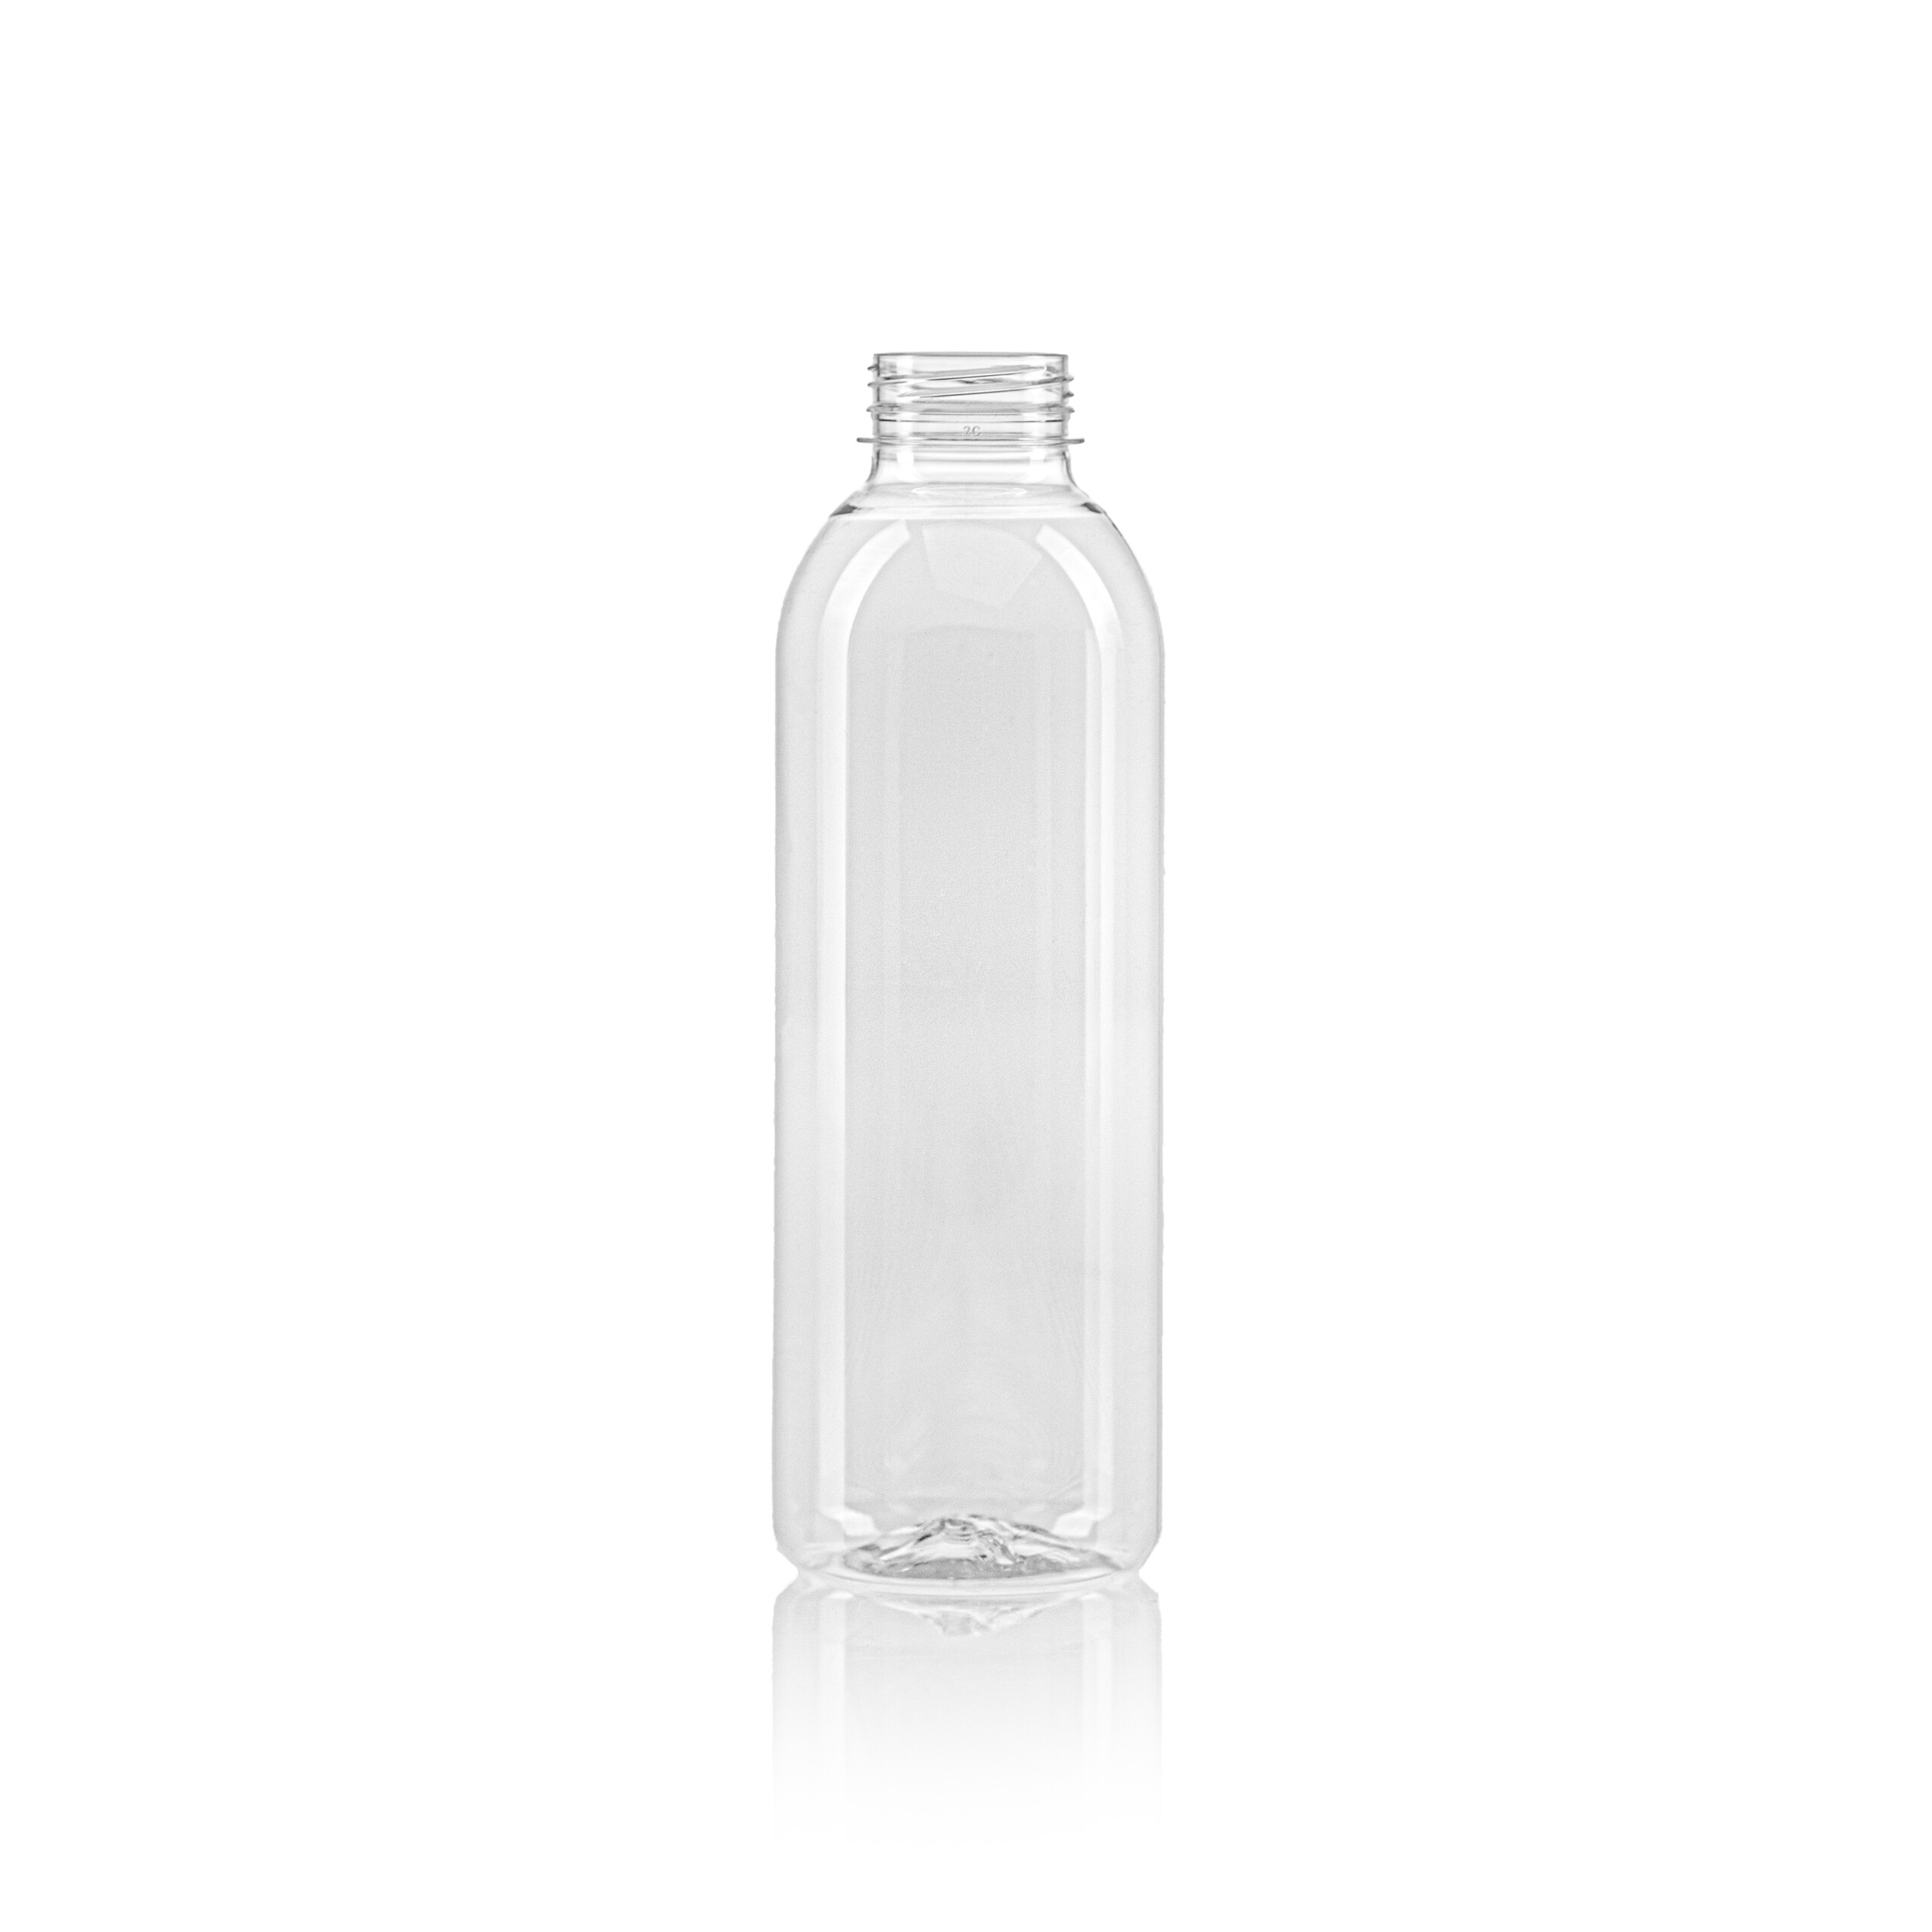 PET juice bottle round 750ml scaled 72